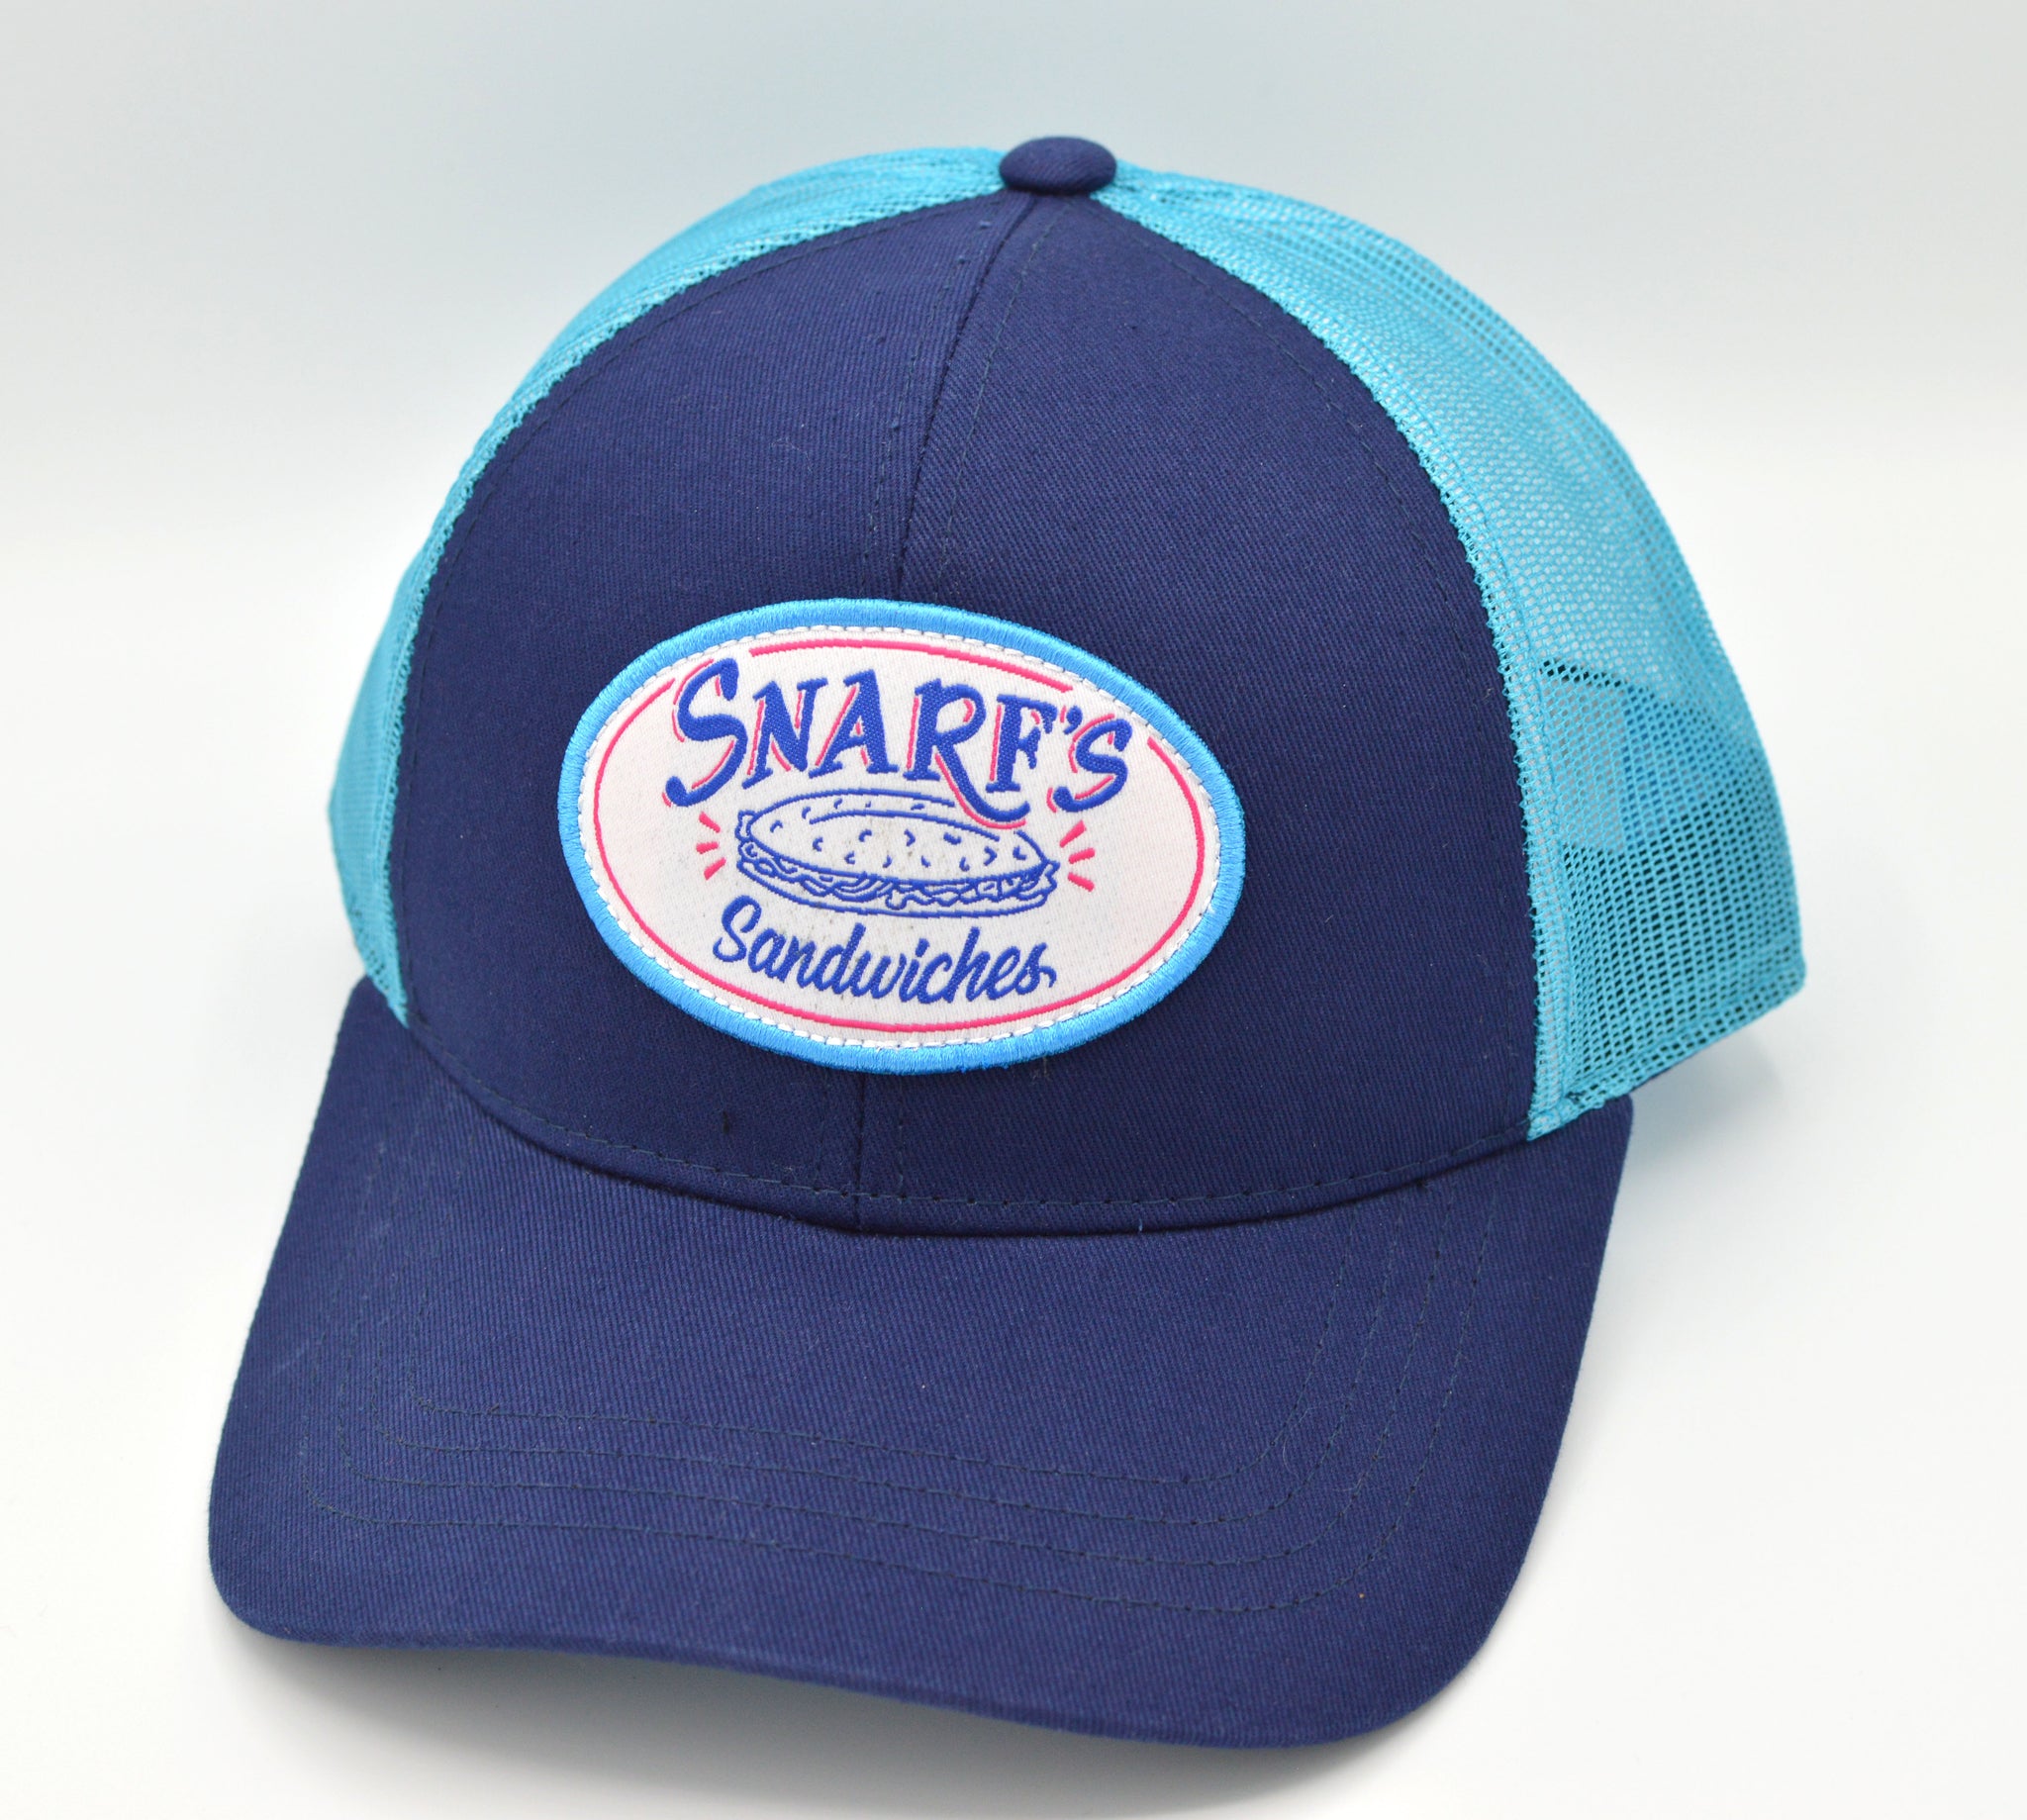 Snarf's Trucker Hat – Snarf's Sandwiches